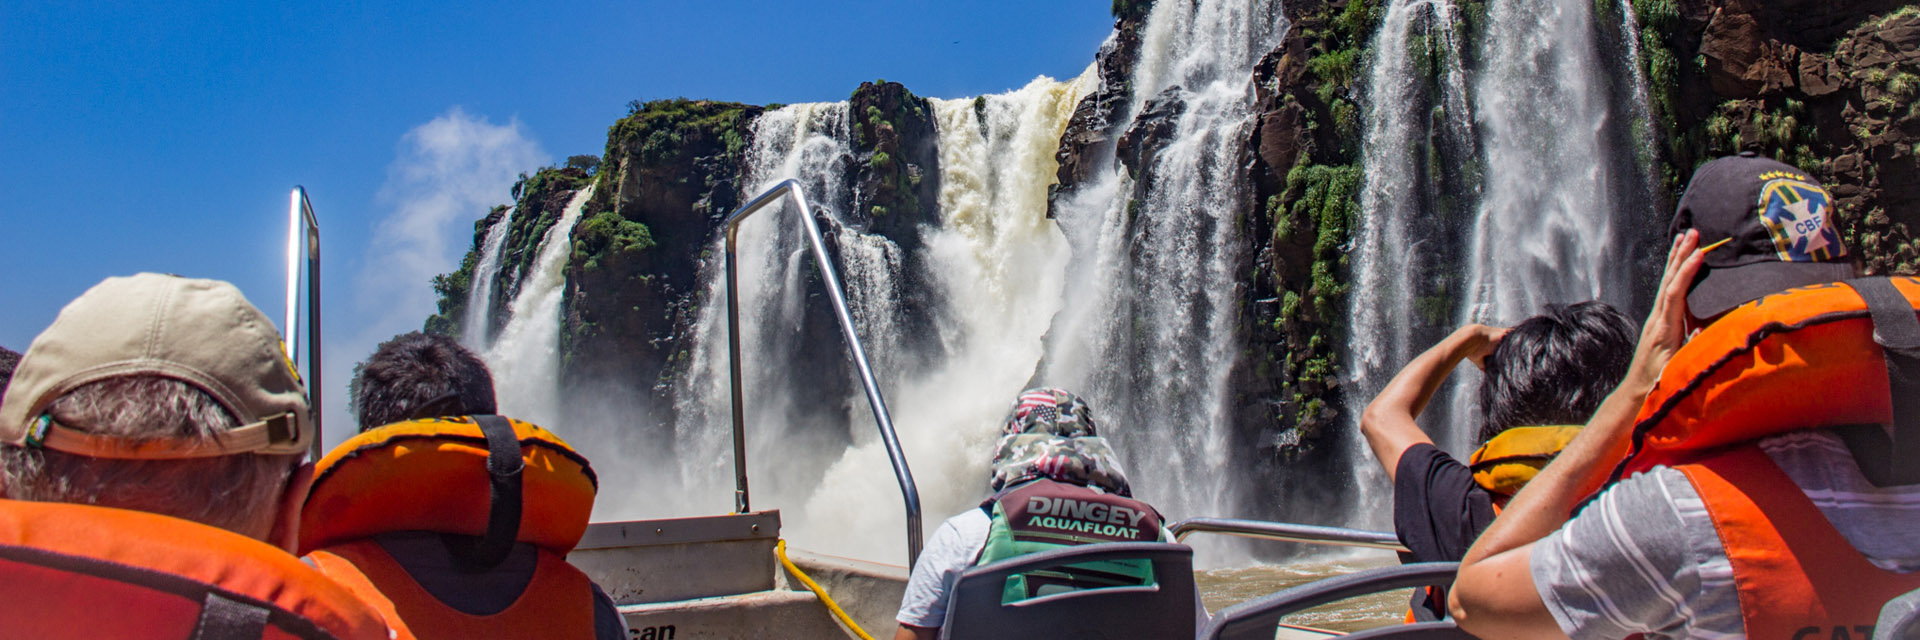 O que fazer em Foz do Iguaçu